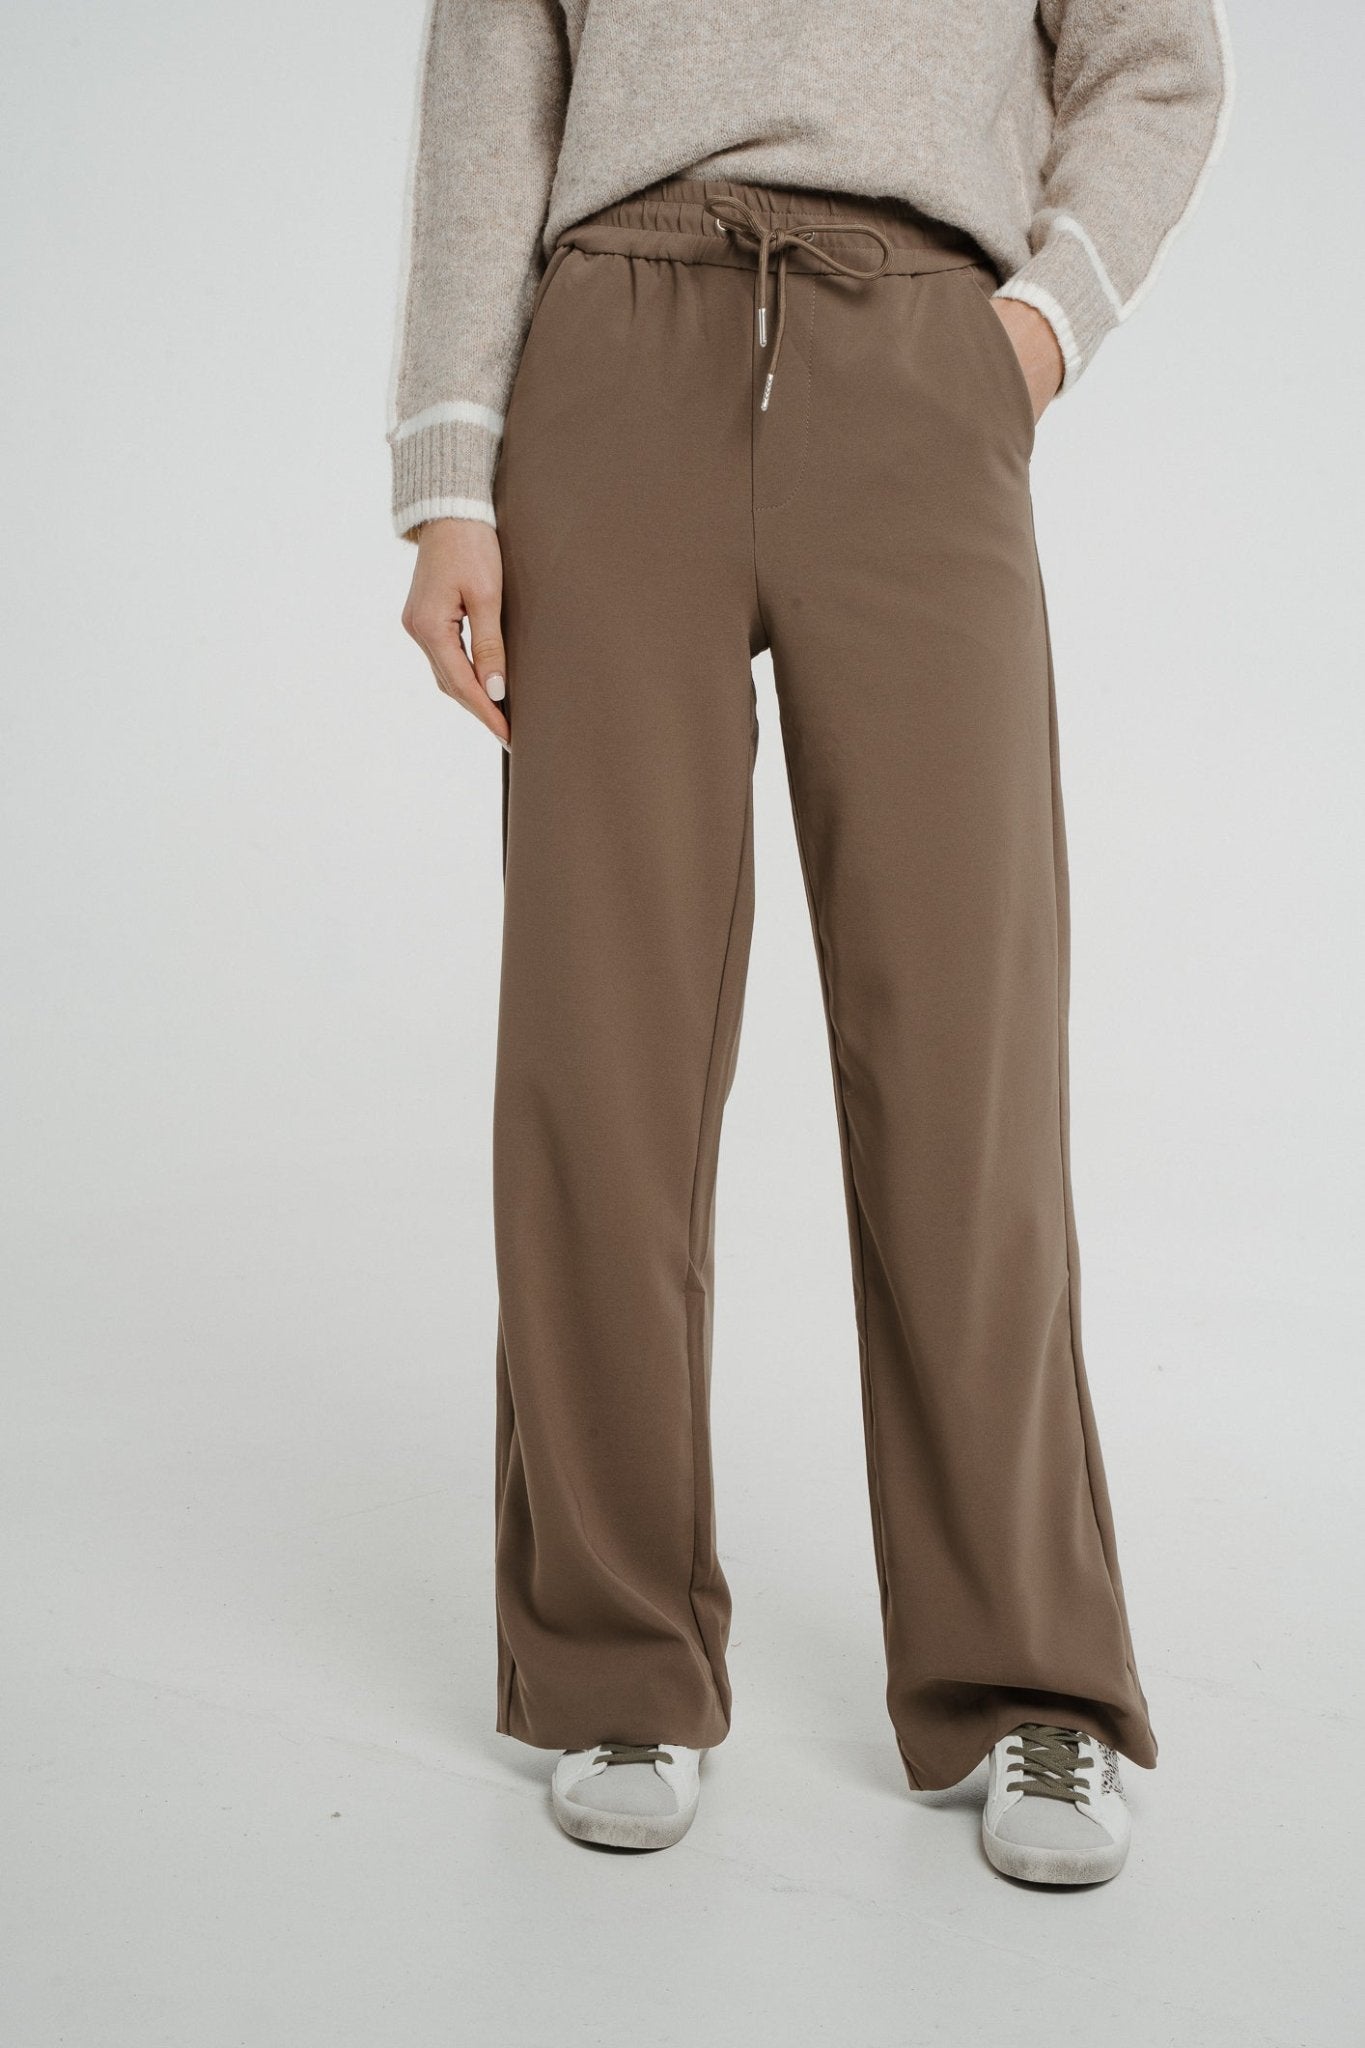 http://walkinwardrobeonline.com/cdn/shop/products/freya-wide-leg-trouser-in-taupe-549585.jpg?v=1702139550